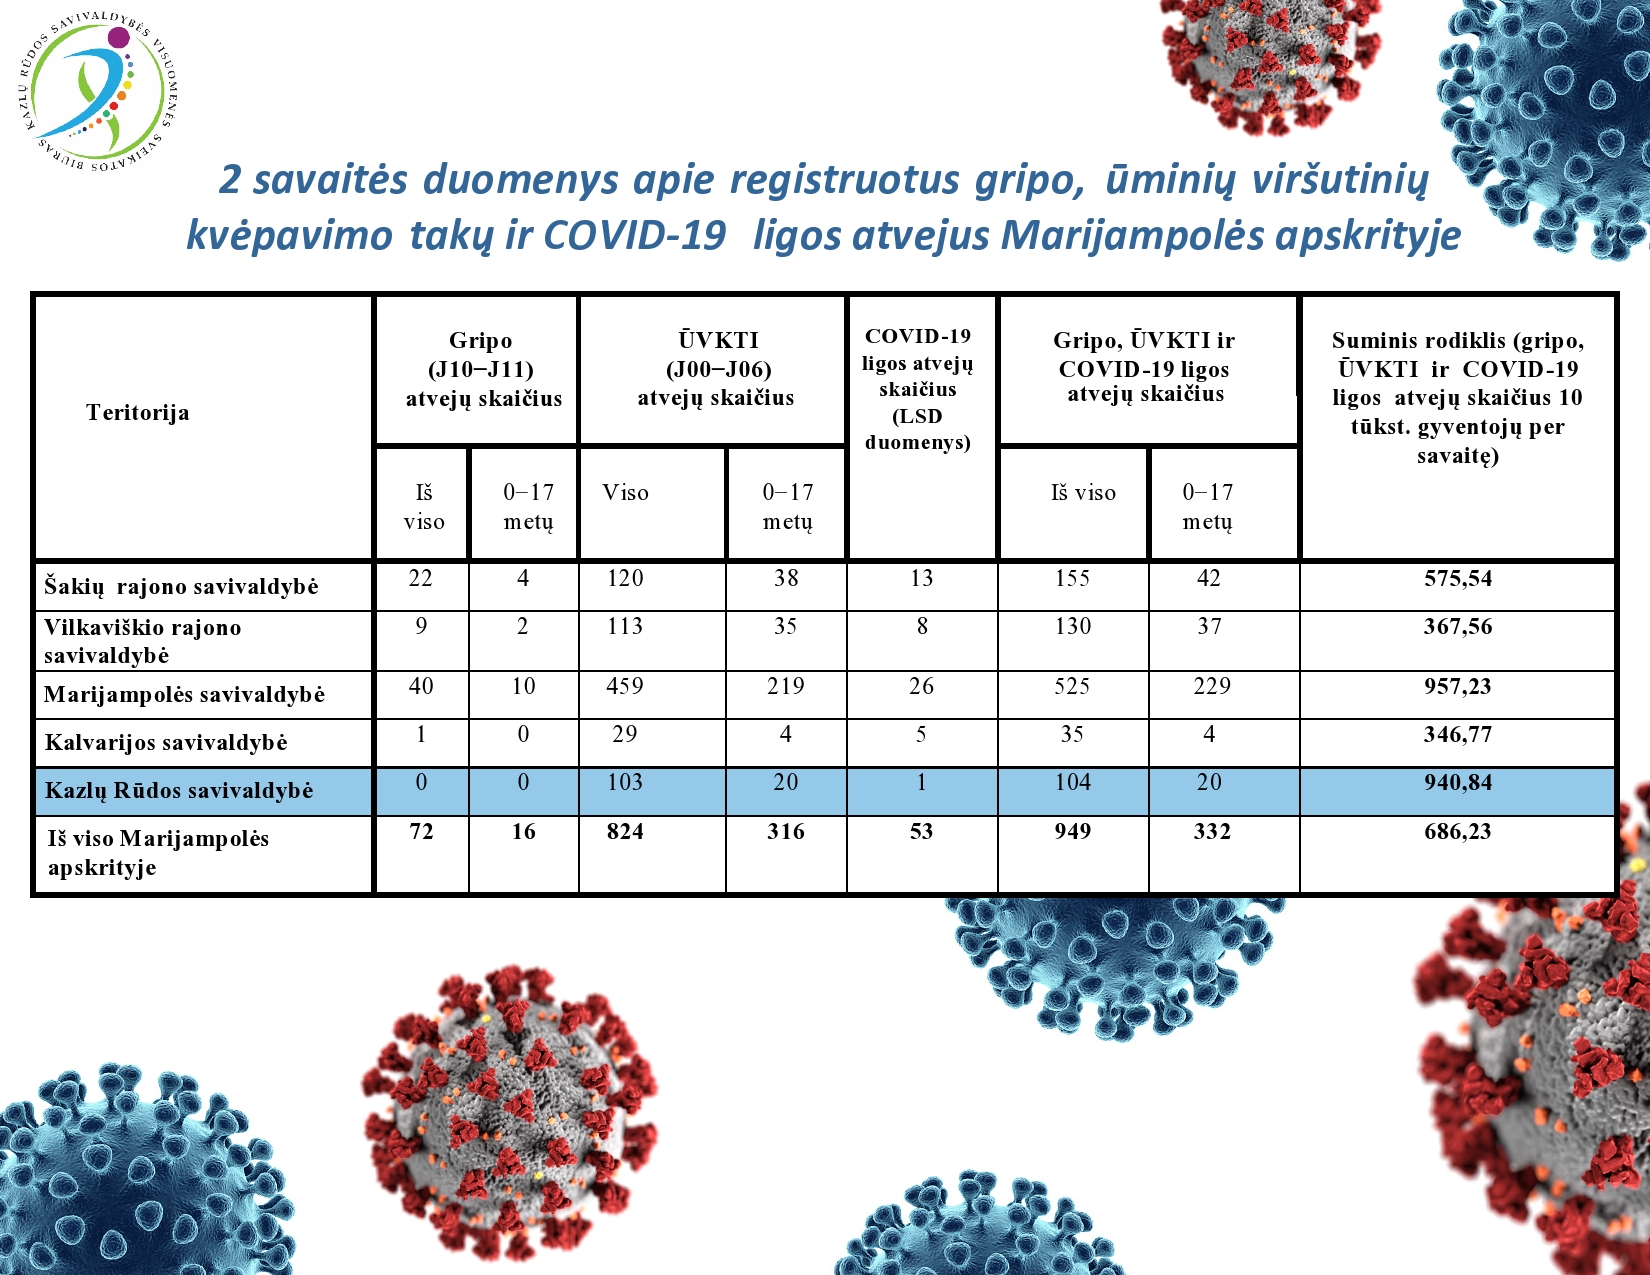 2-savaites-duomenys-apie-registruotus-gripo,-uminiu-virsutiniu-kvepavimo-taku-ir-covid-19-ligos-atvejus-marijampoles-apskrityje